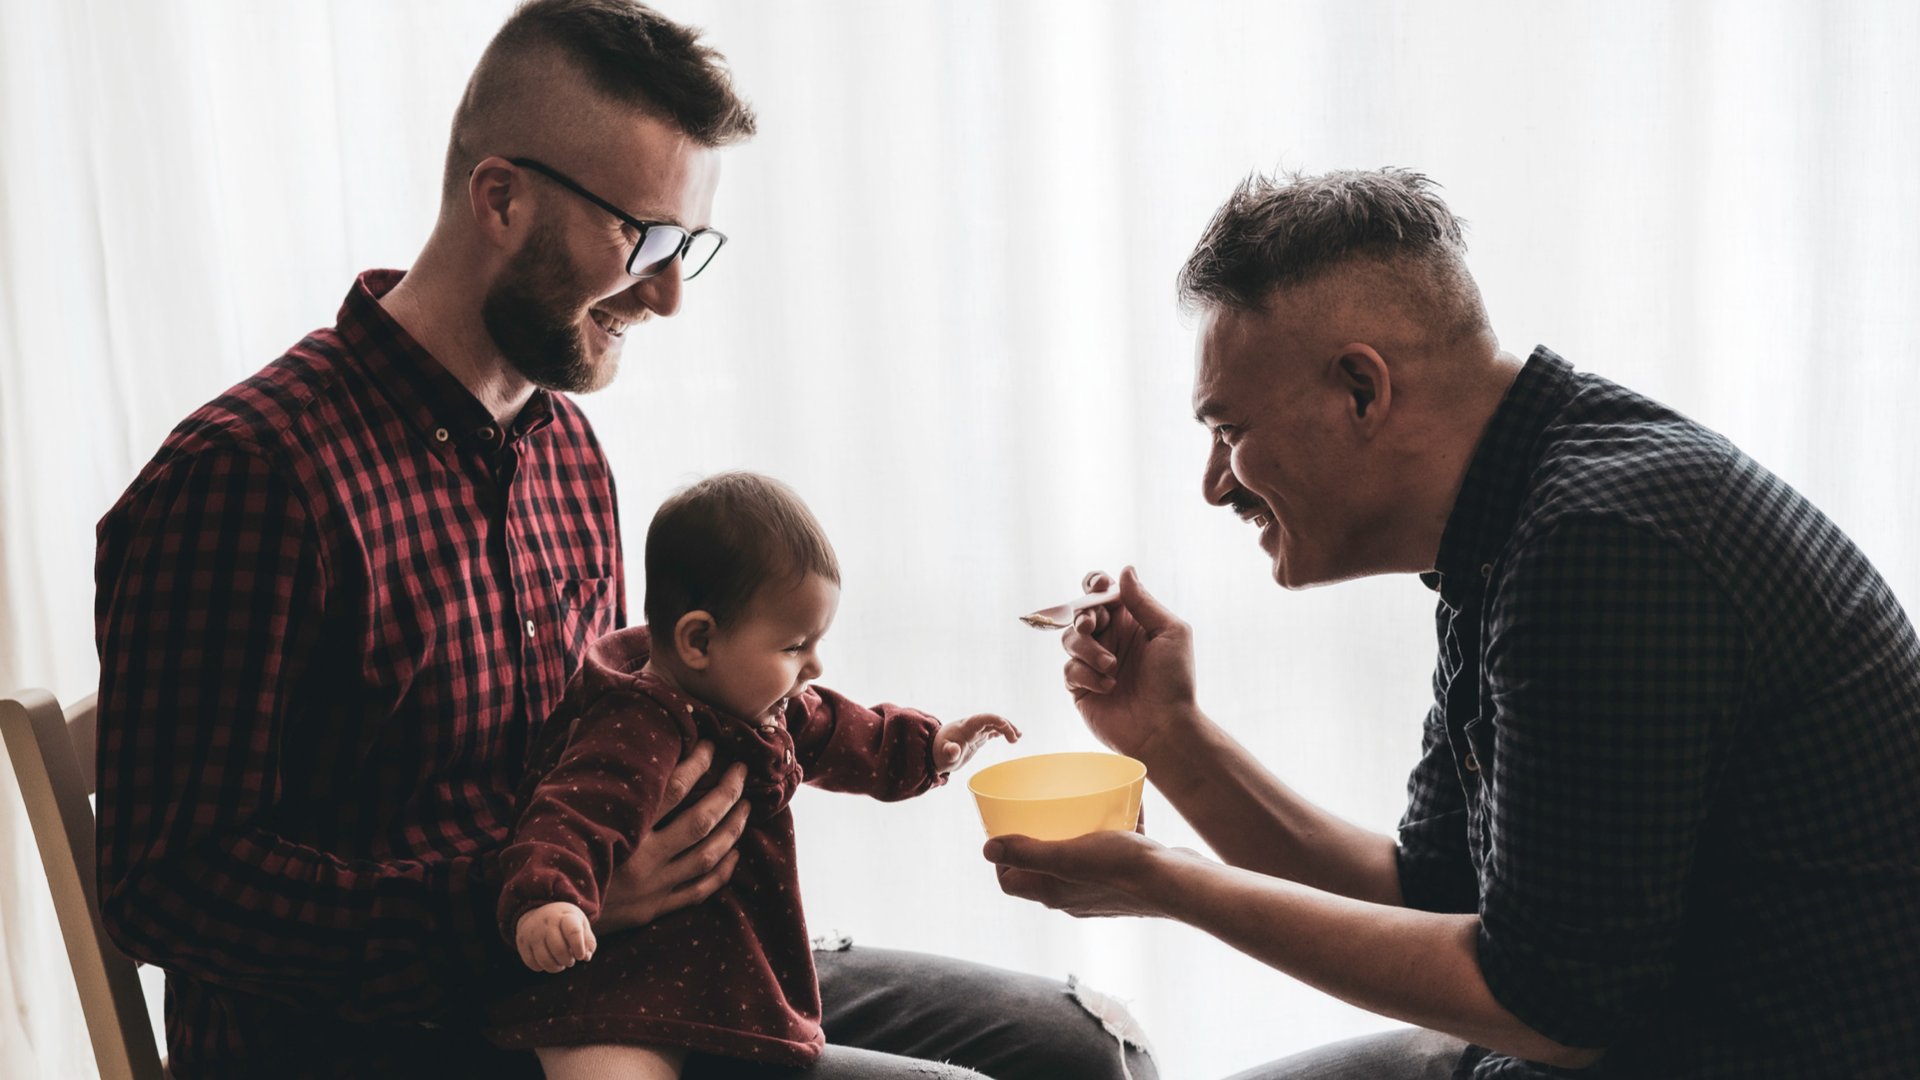 Um homem sentado segurando um neném no colo enquanto outro homem da comida para o bebê